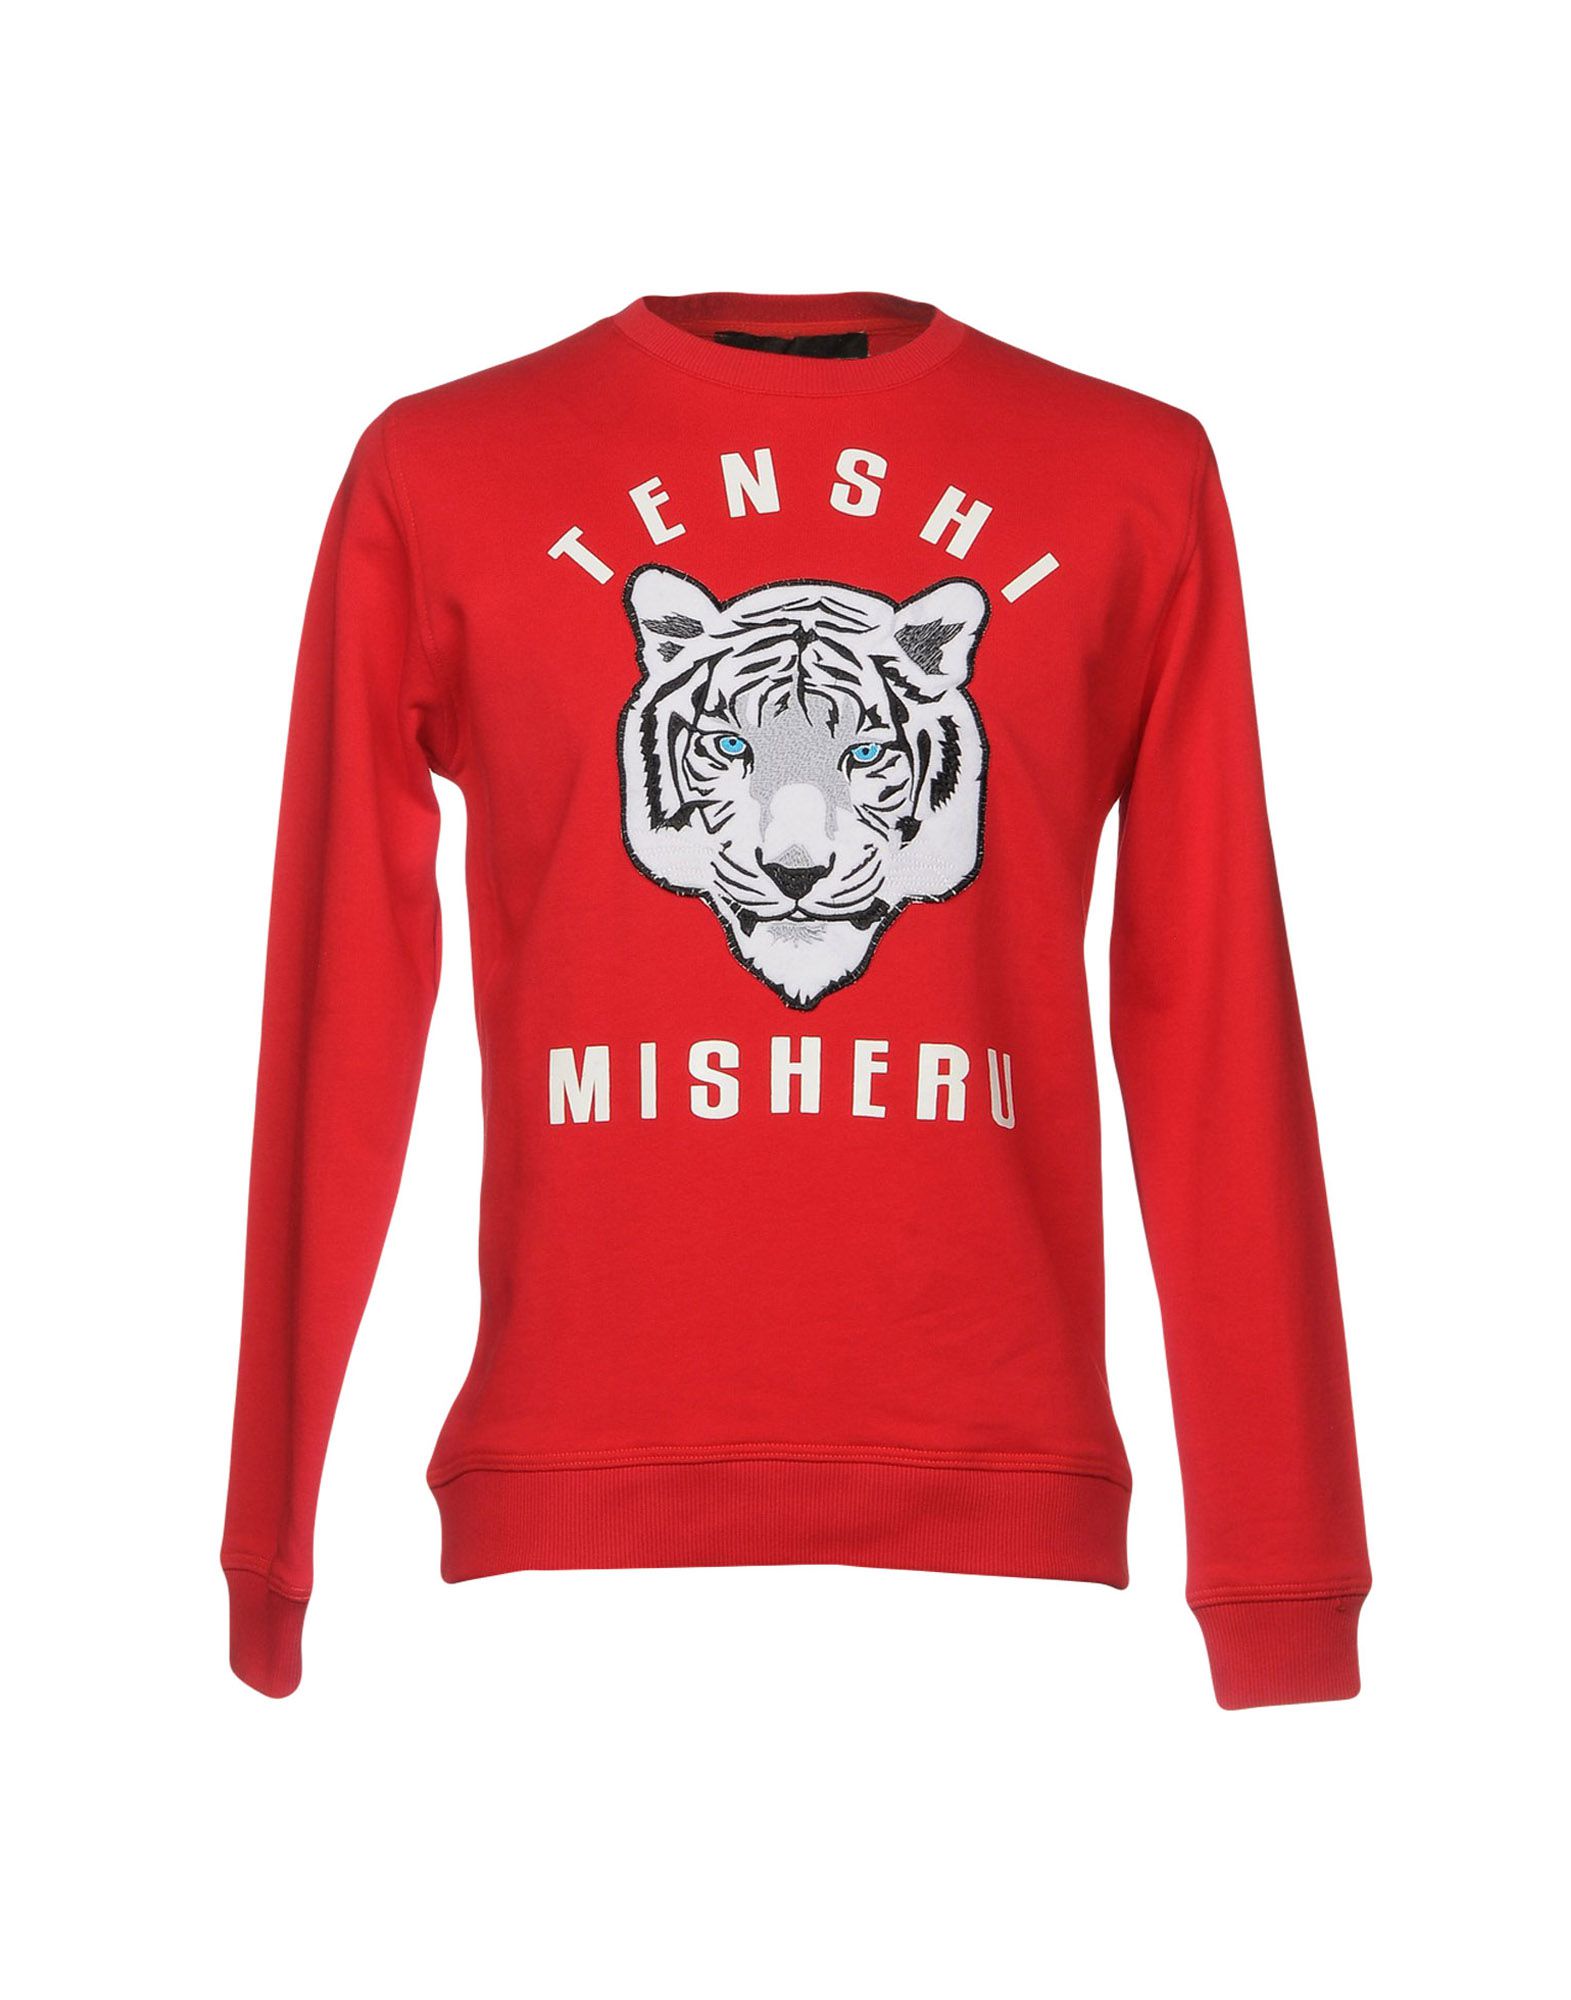 《送料無料》TENSHI MISHERU メンズ スウェットシャツ レッド M コットン 100% / ポリウレタン